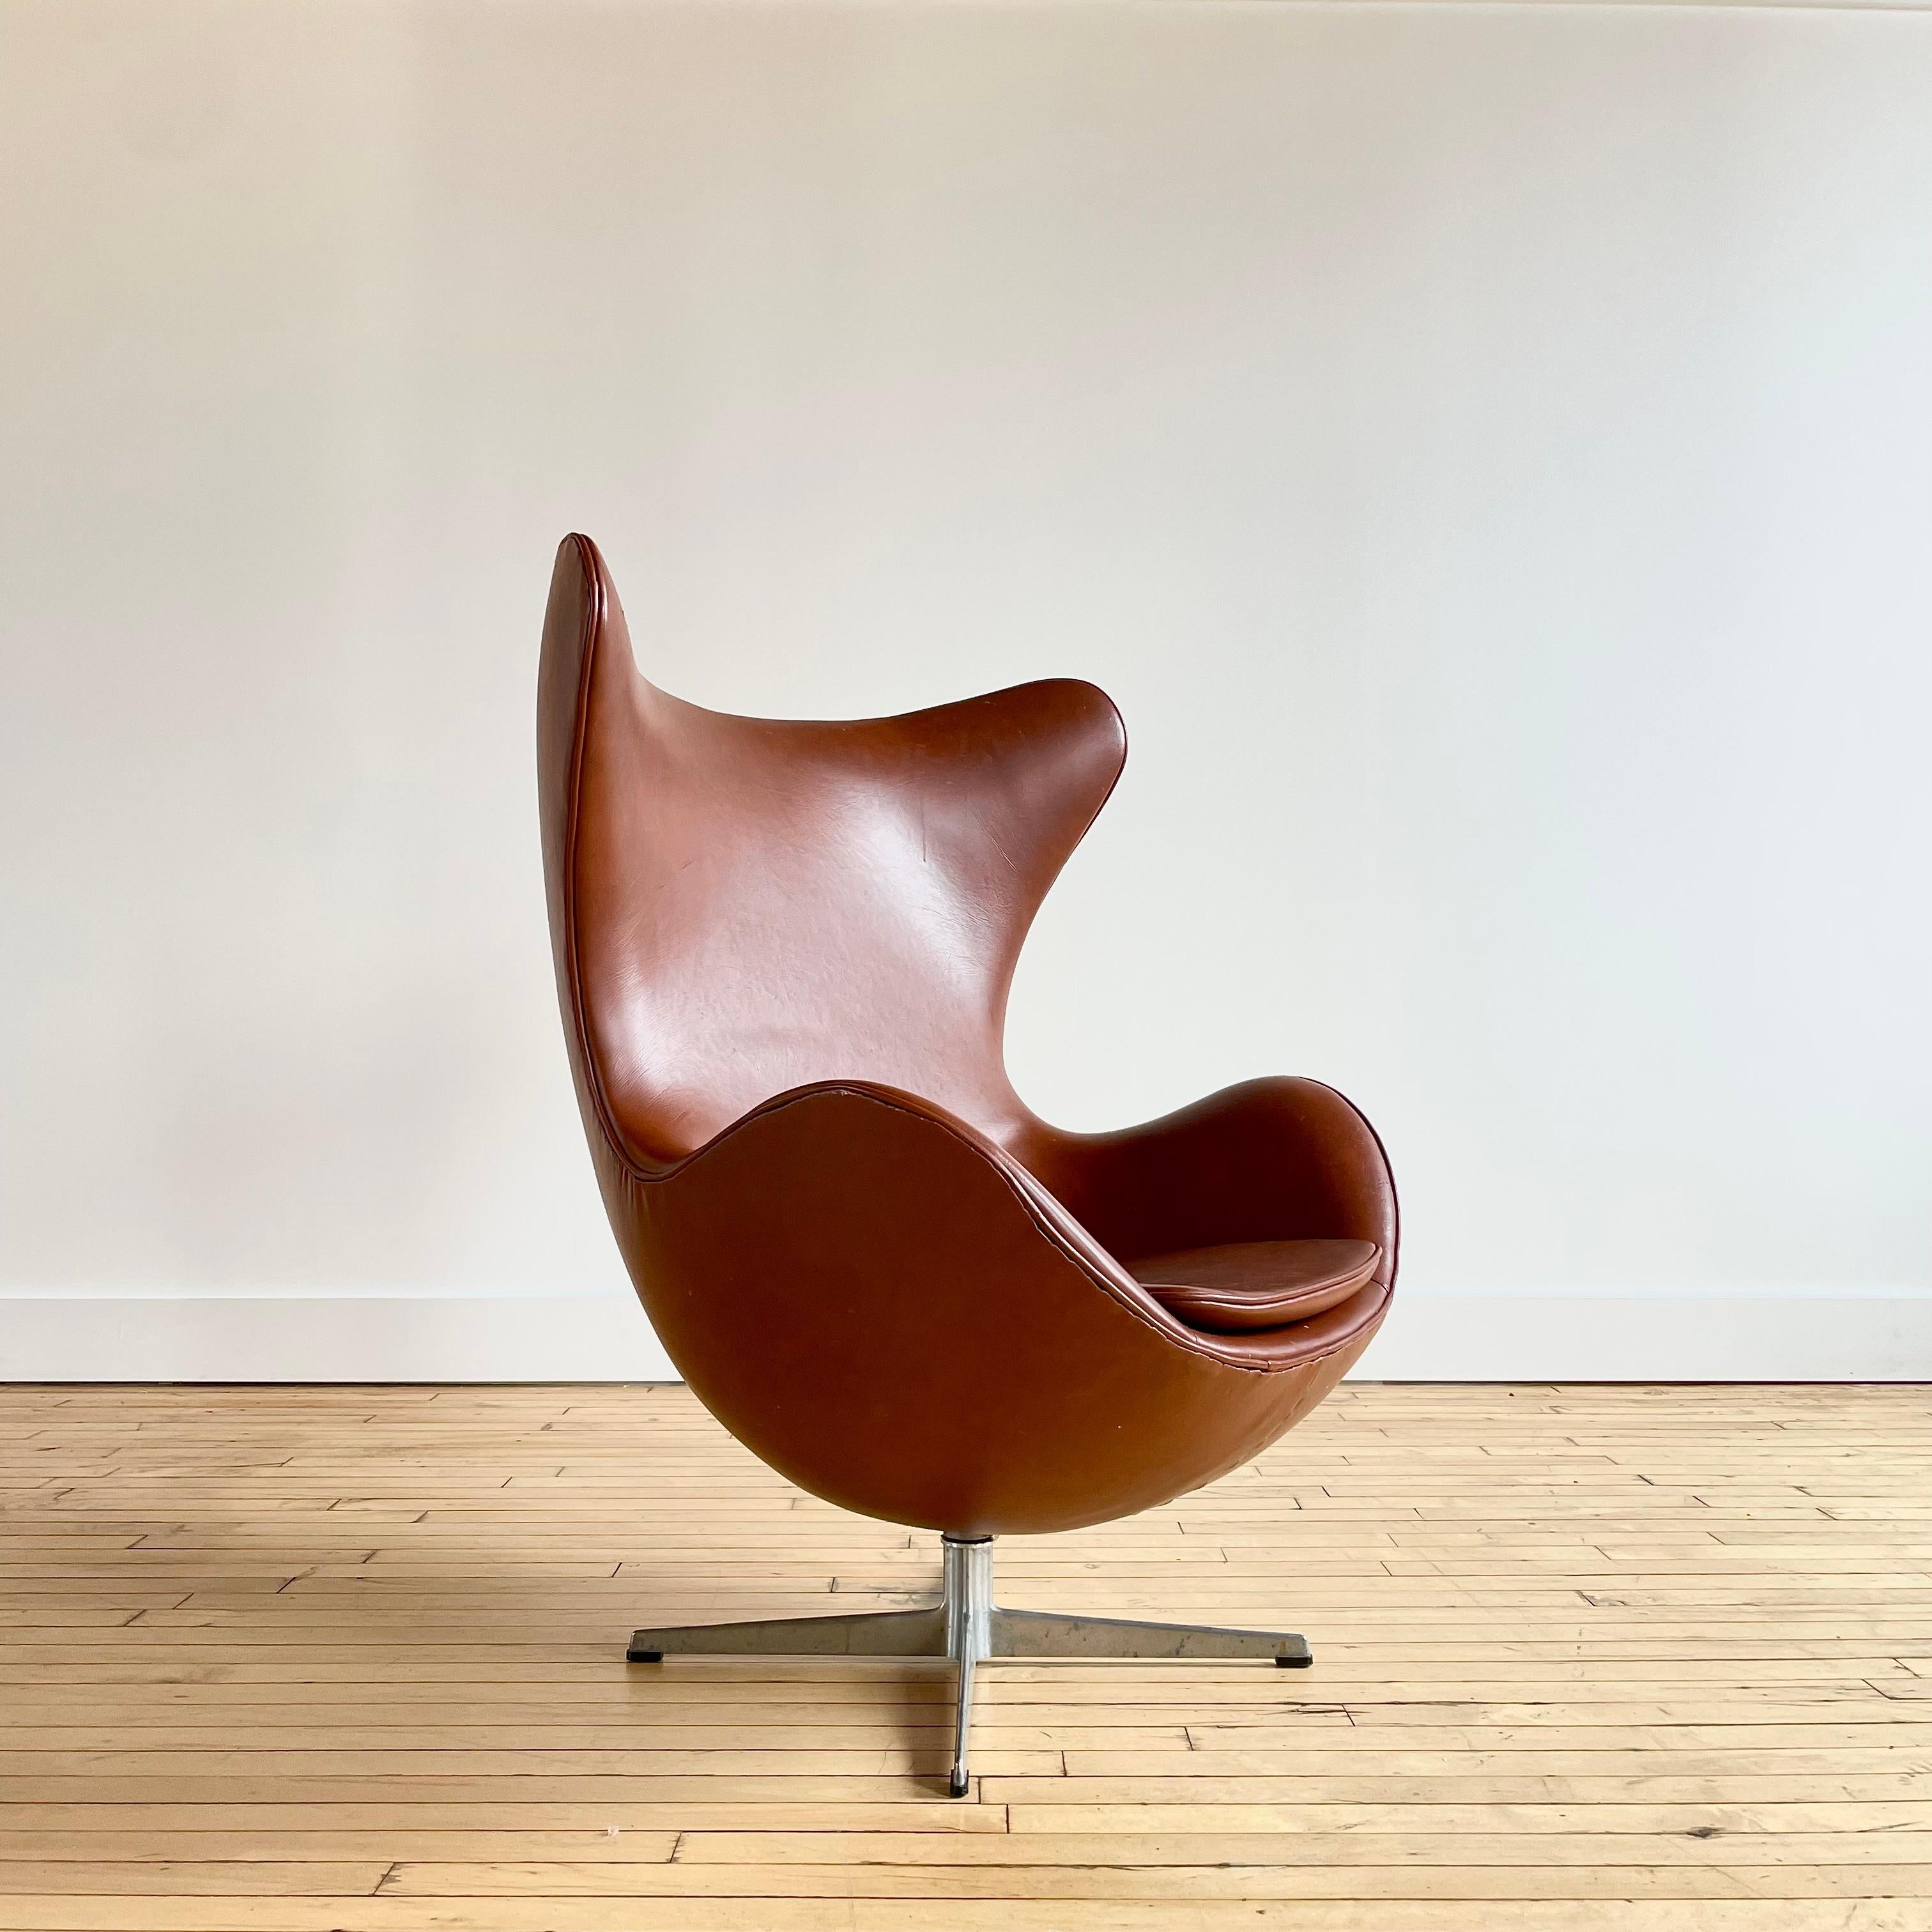 Authentique exemple précoce de l'emblématique Egg Chair d'Arne Jacobsen. La signature de Fritz Hansen est gravée dans la base. 

Cette chaise est recouverte d'un revêtement cognac qui semble être du faux cuir ou du vinyle. Je ne suis pas sûr qu'il